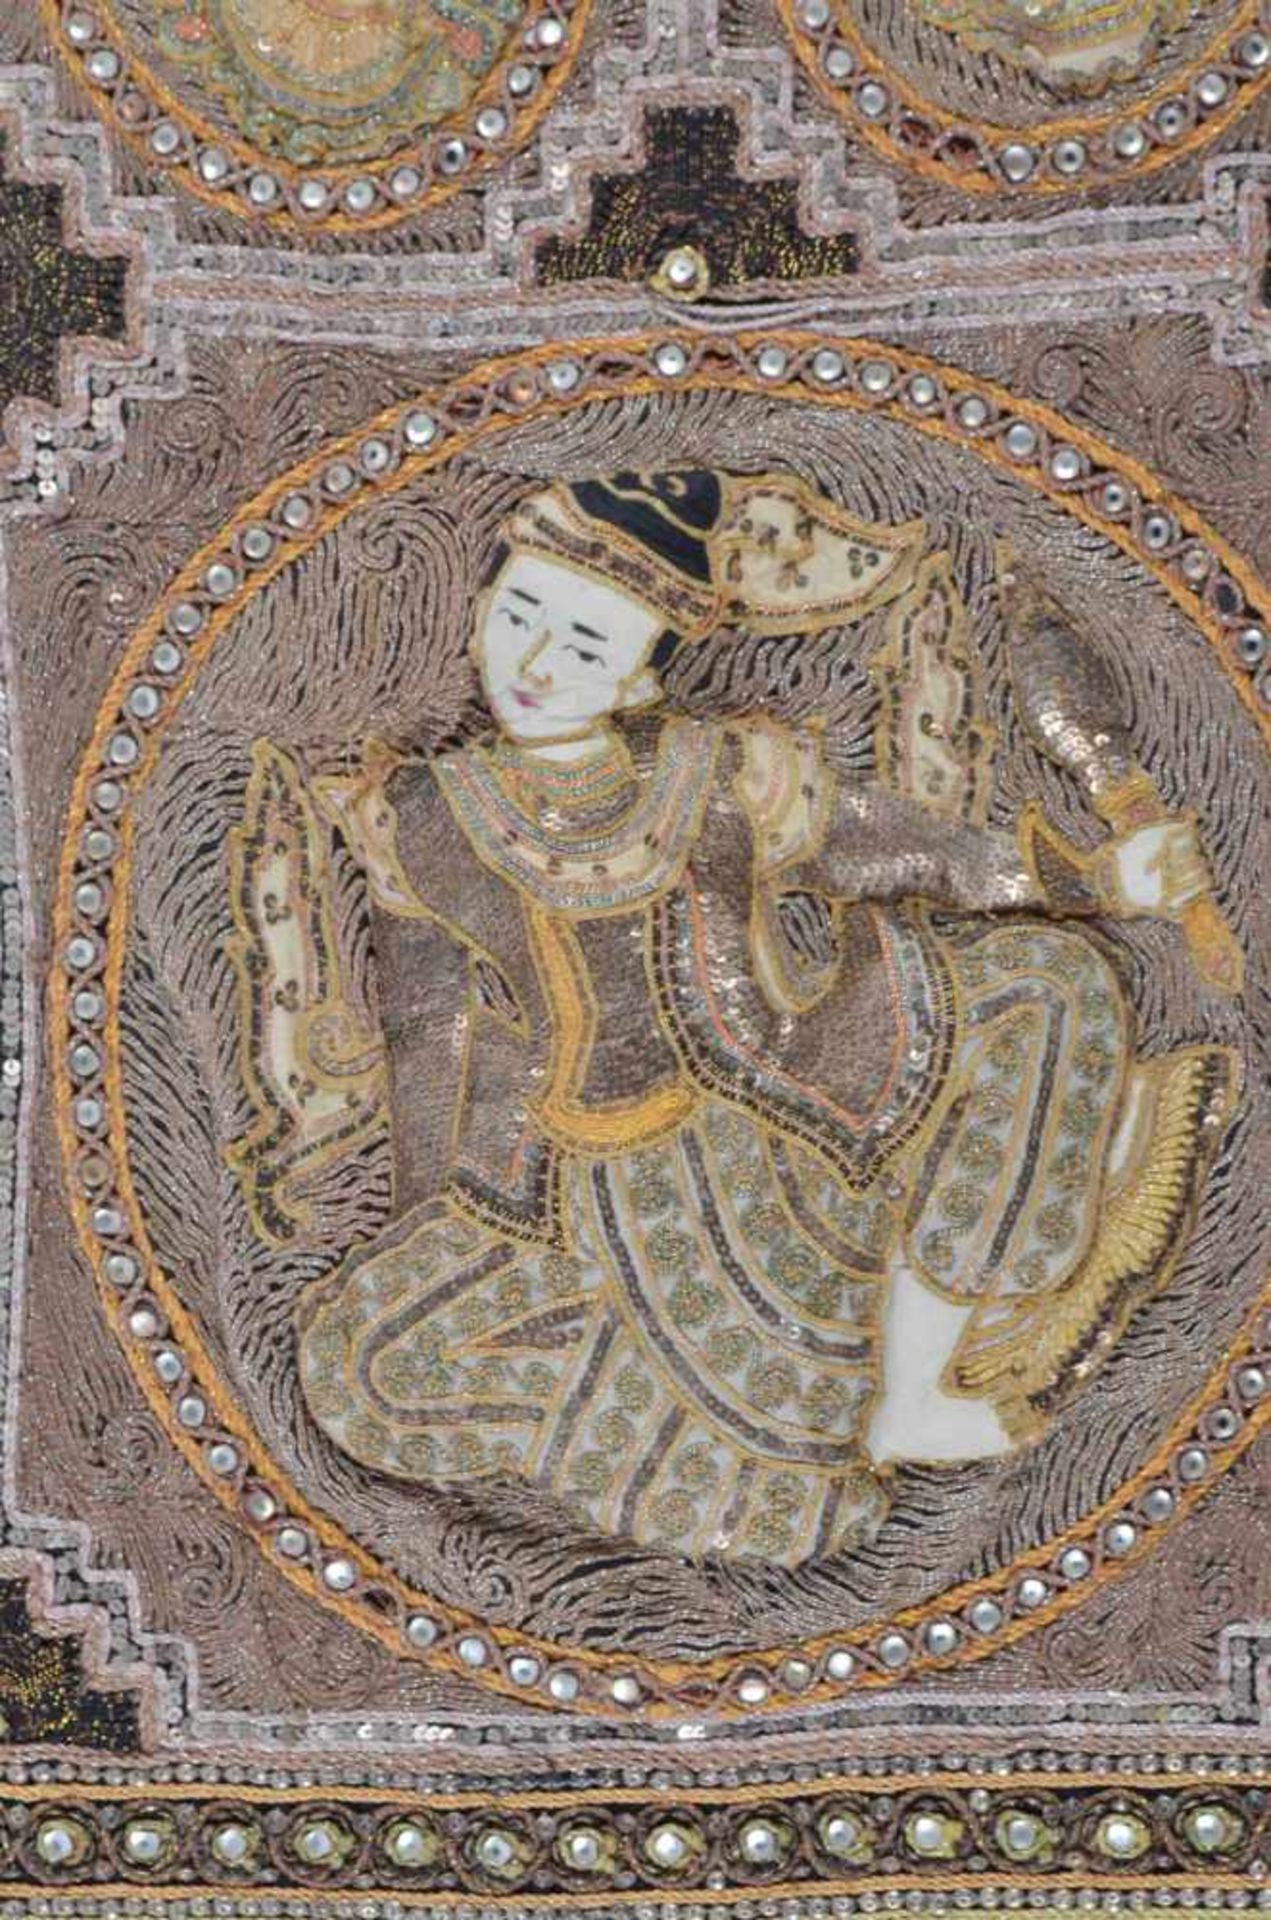 Asiatischer Wandteppich 19. Jhd.Handarbeit, mit Pailletten und Steinen besetzt, 74 cm x 57 cmAsian - Image 2 of 5